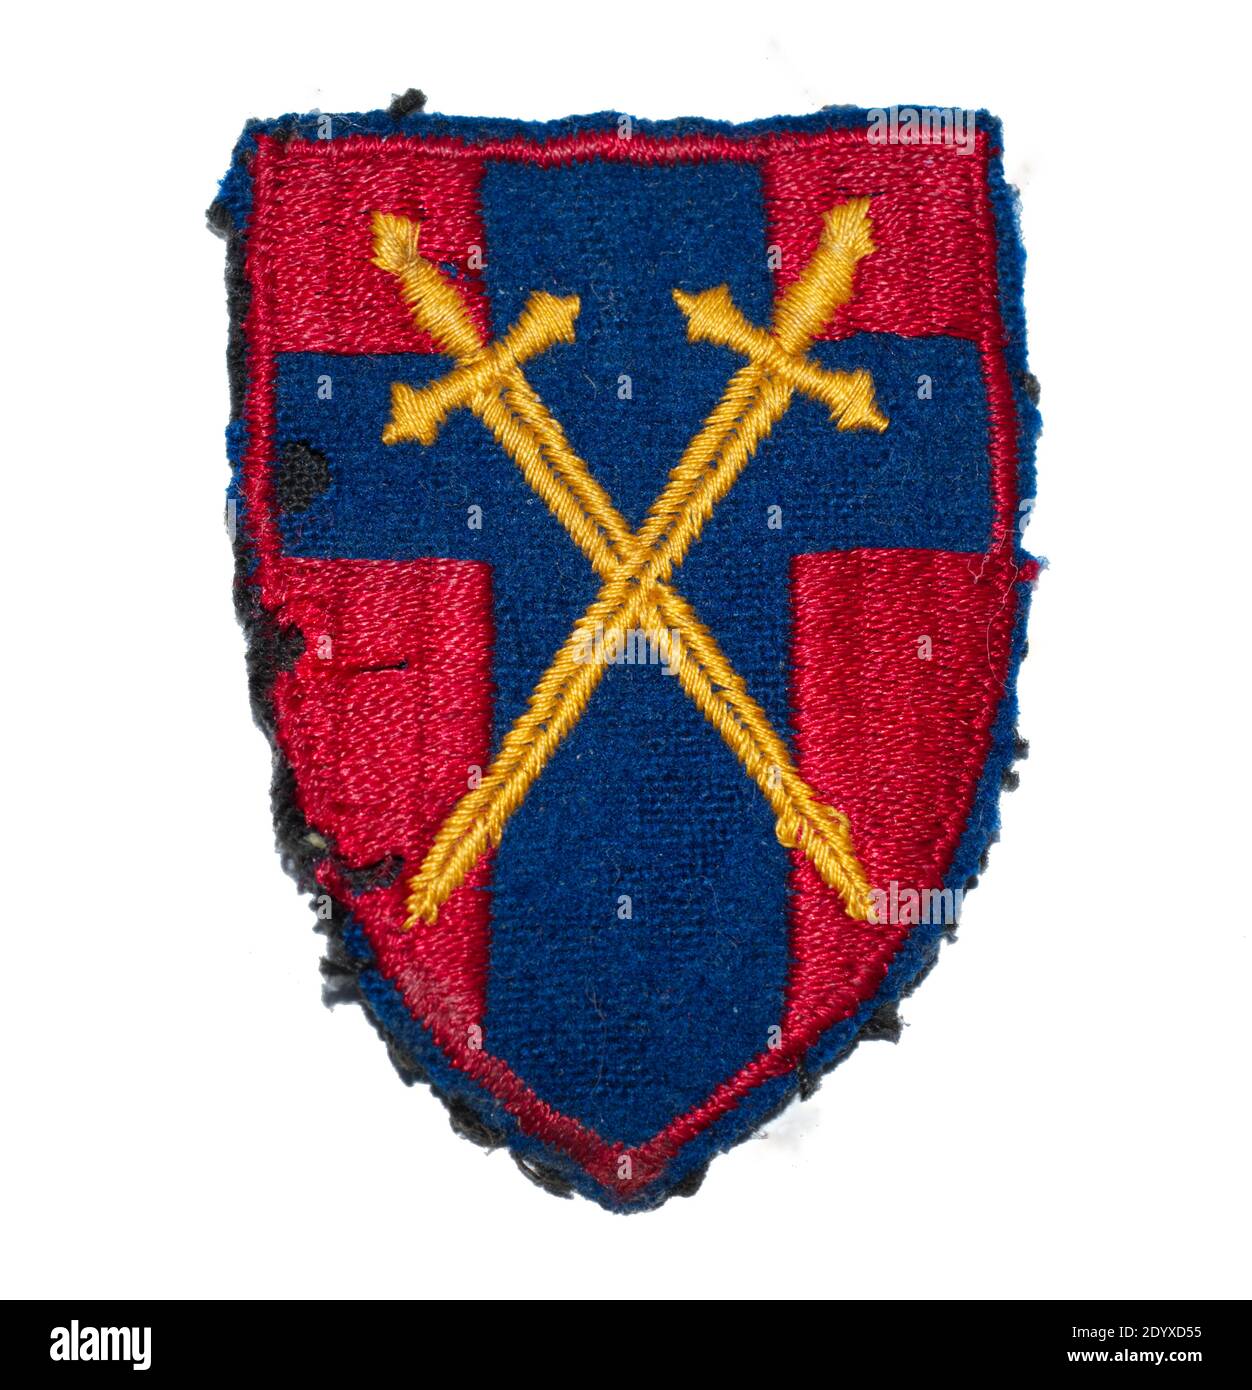 Ein Schulterblitz der 21st Army Group, einer zwischen 1943 und 1945 aktiven britischen Armee-Einheit, die später in British Army of the Rhine (1945-1994) umbenannt wurde. Stockfoto